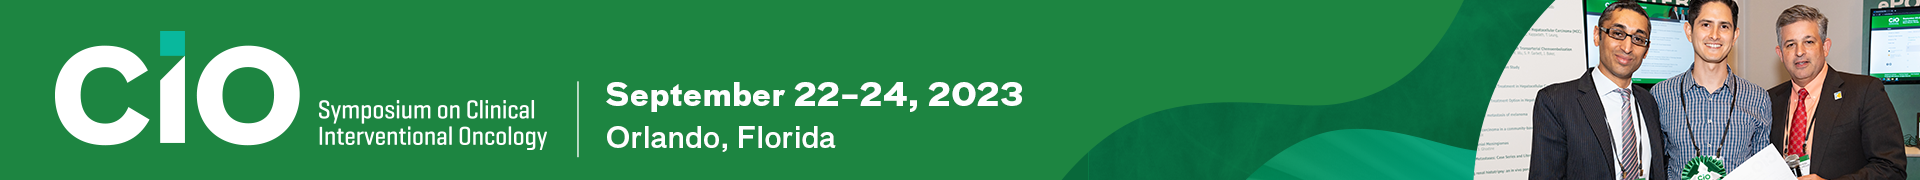 CIO 2023 Event Banner